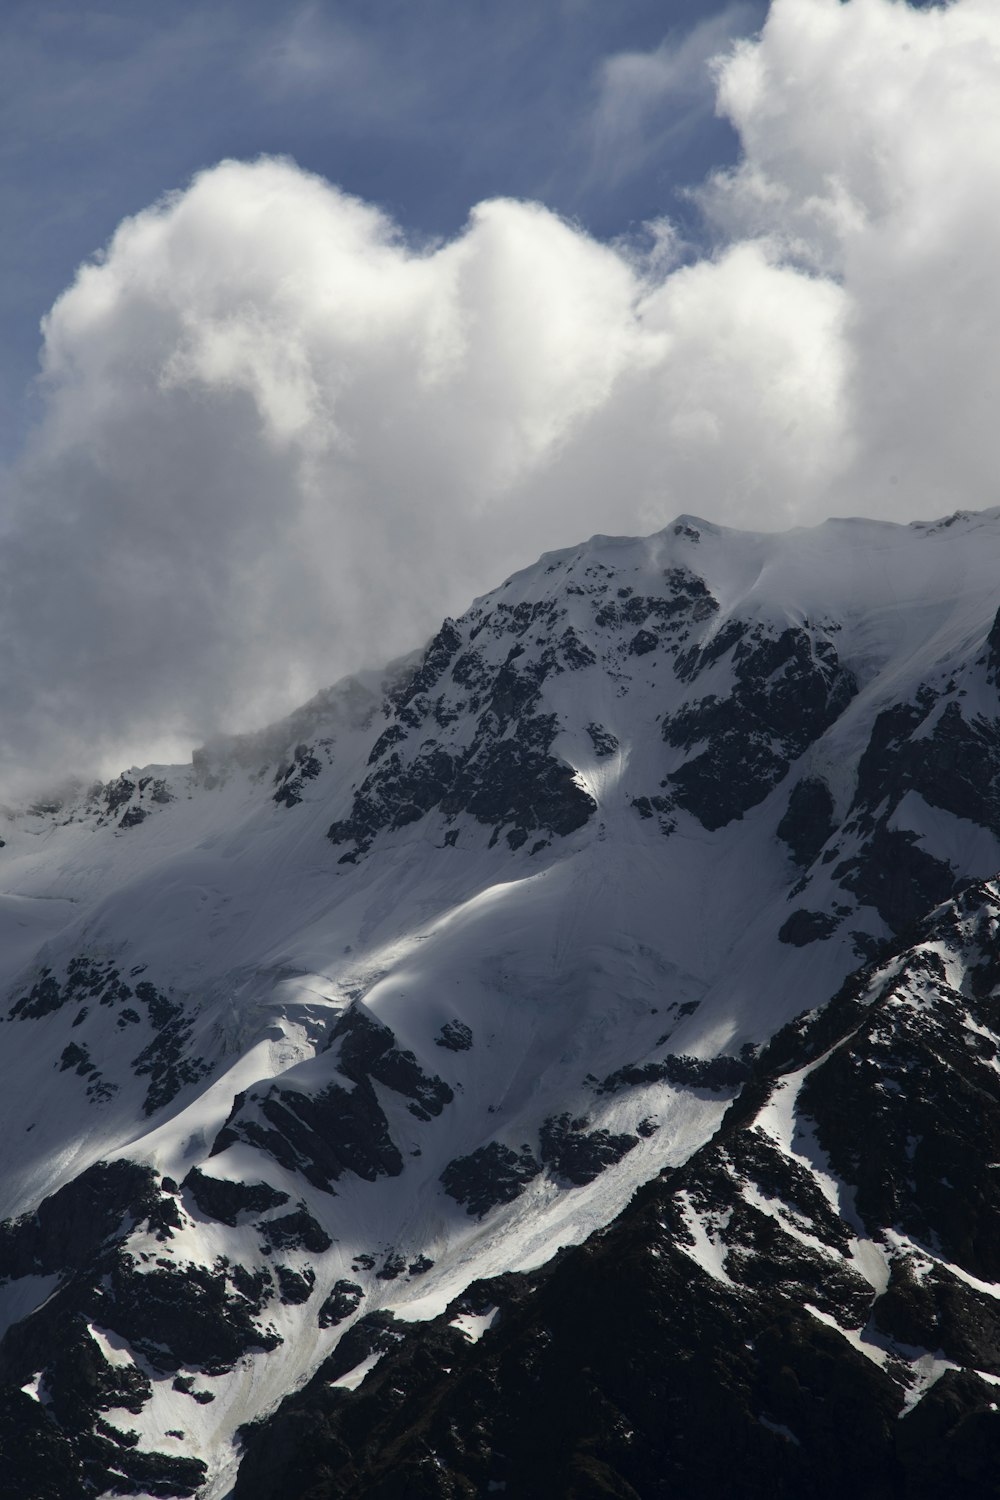 Un grupo de personas de pie en la cima de una montaña cubierta de nieve